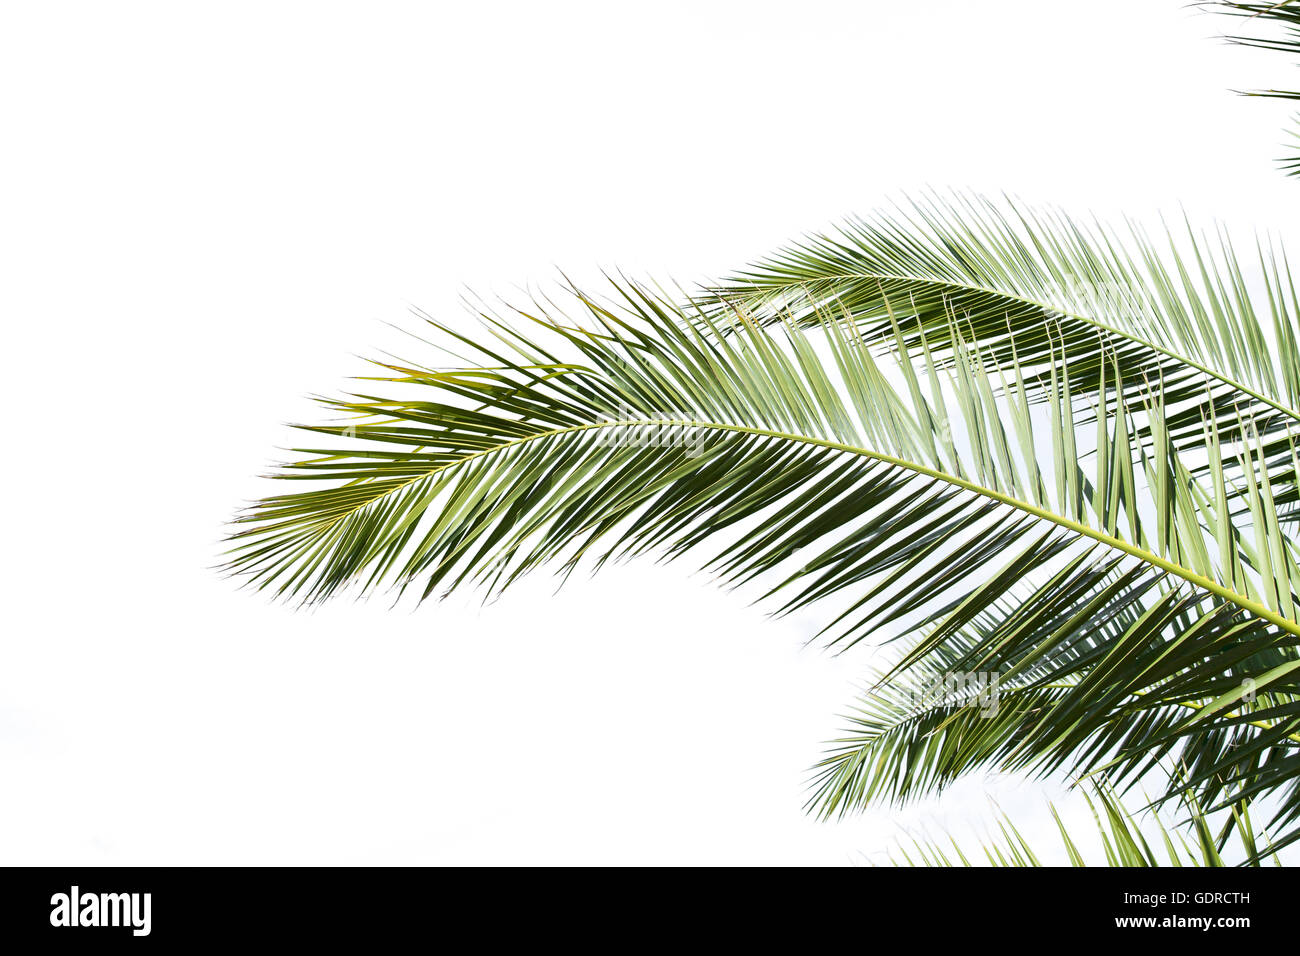 Les feuilles de palmier isolé sur fond blanc Banque D'Images